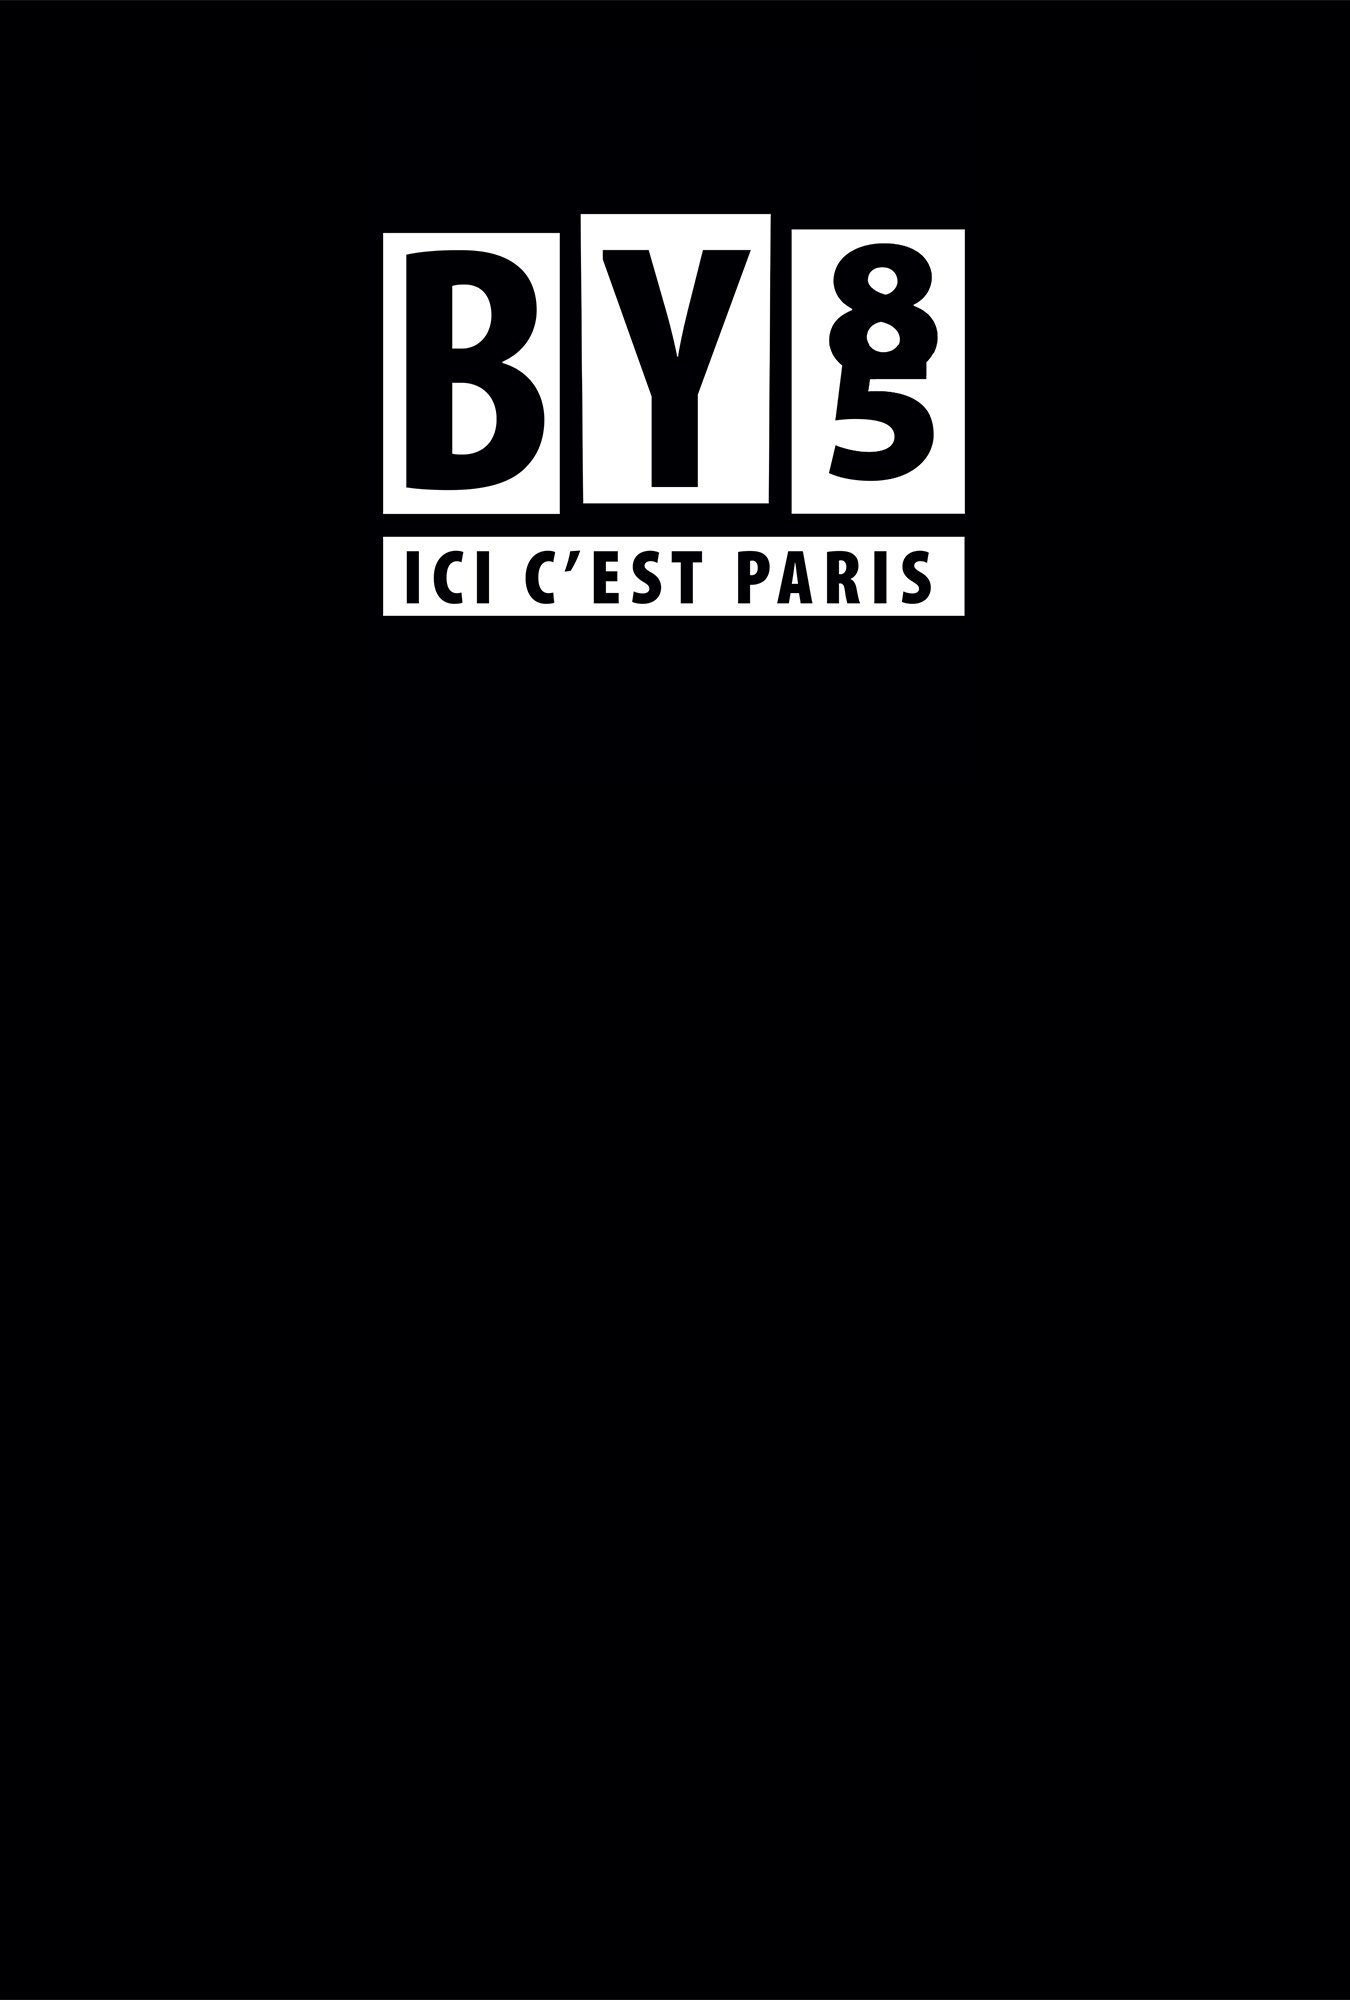 ICI C'EST PARIS - BadYear85